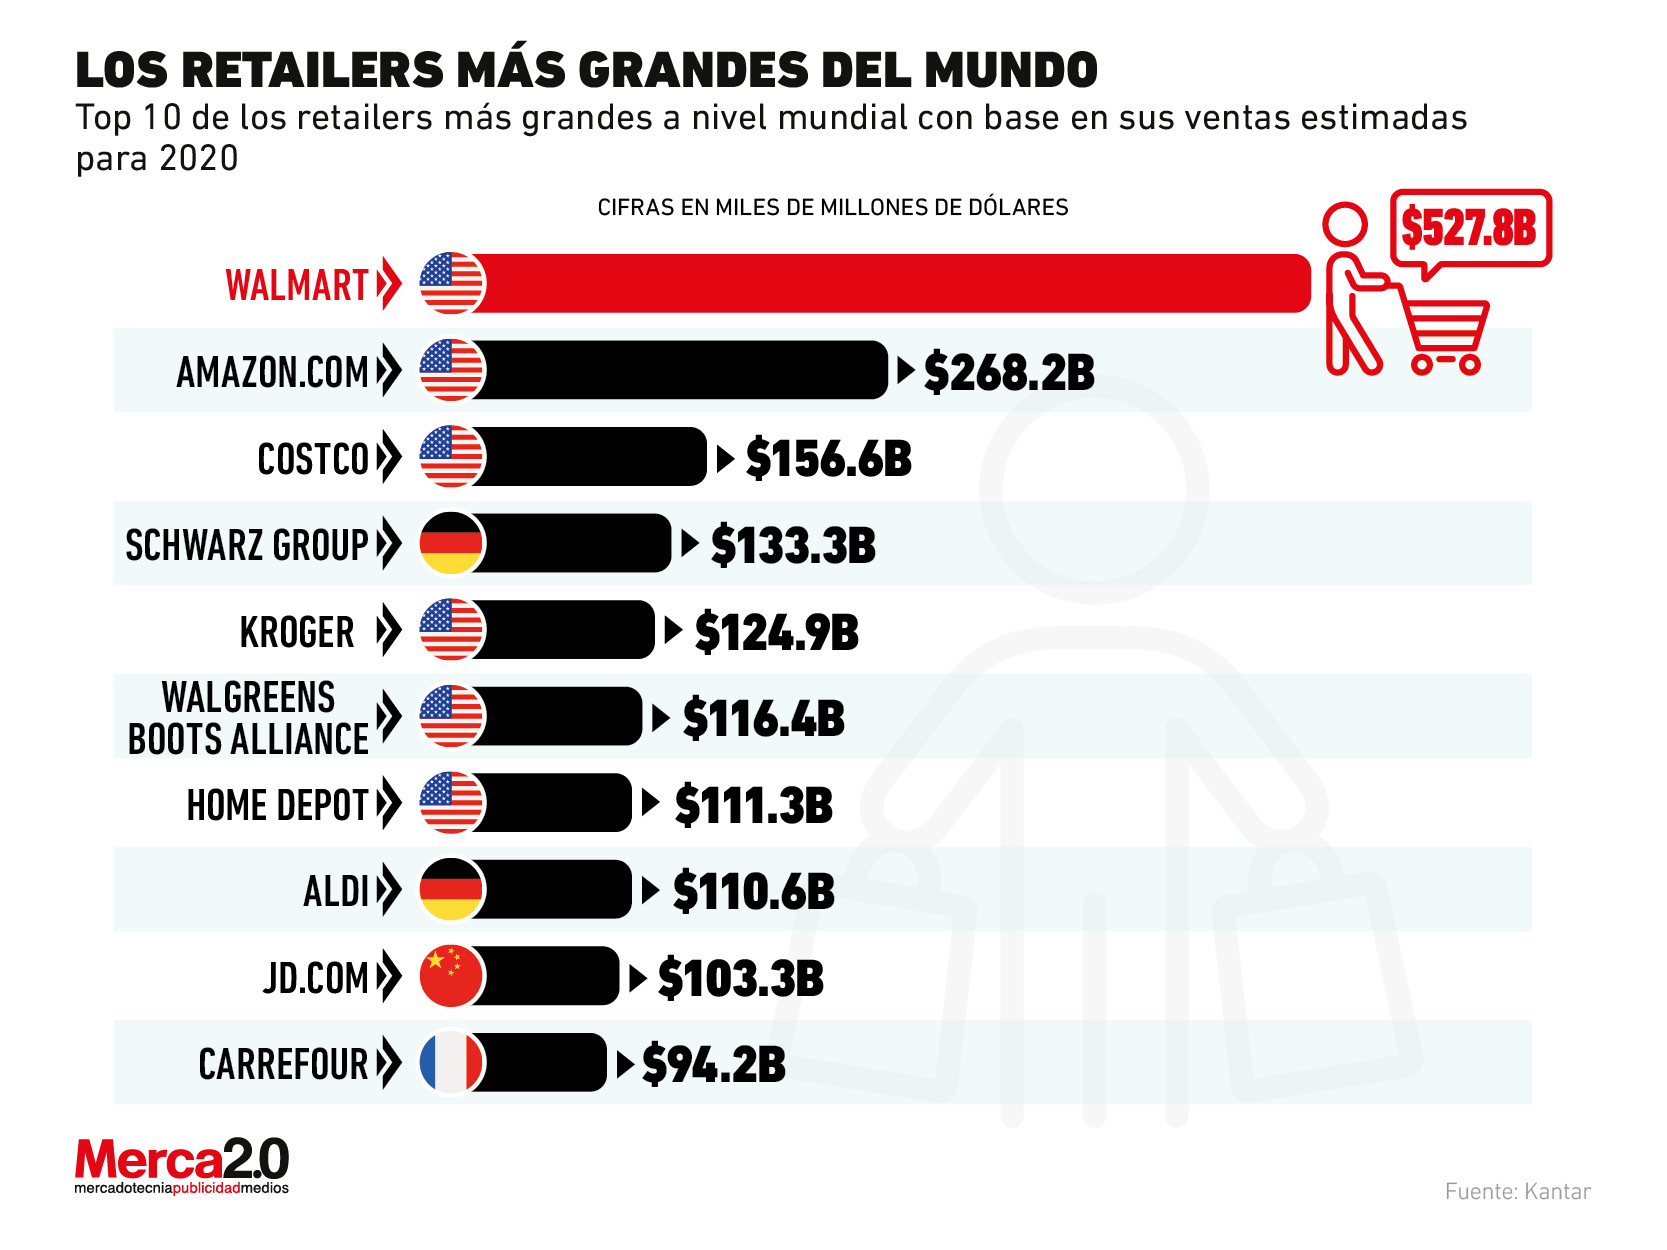 Los retailers más grandes del mundo en 2020